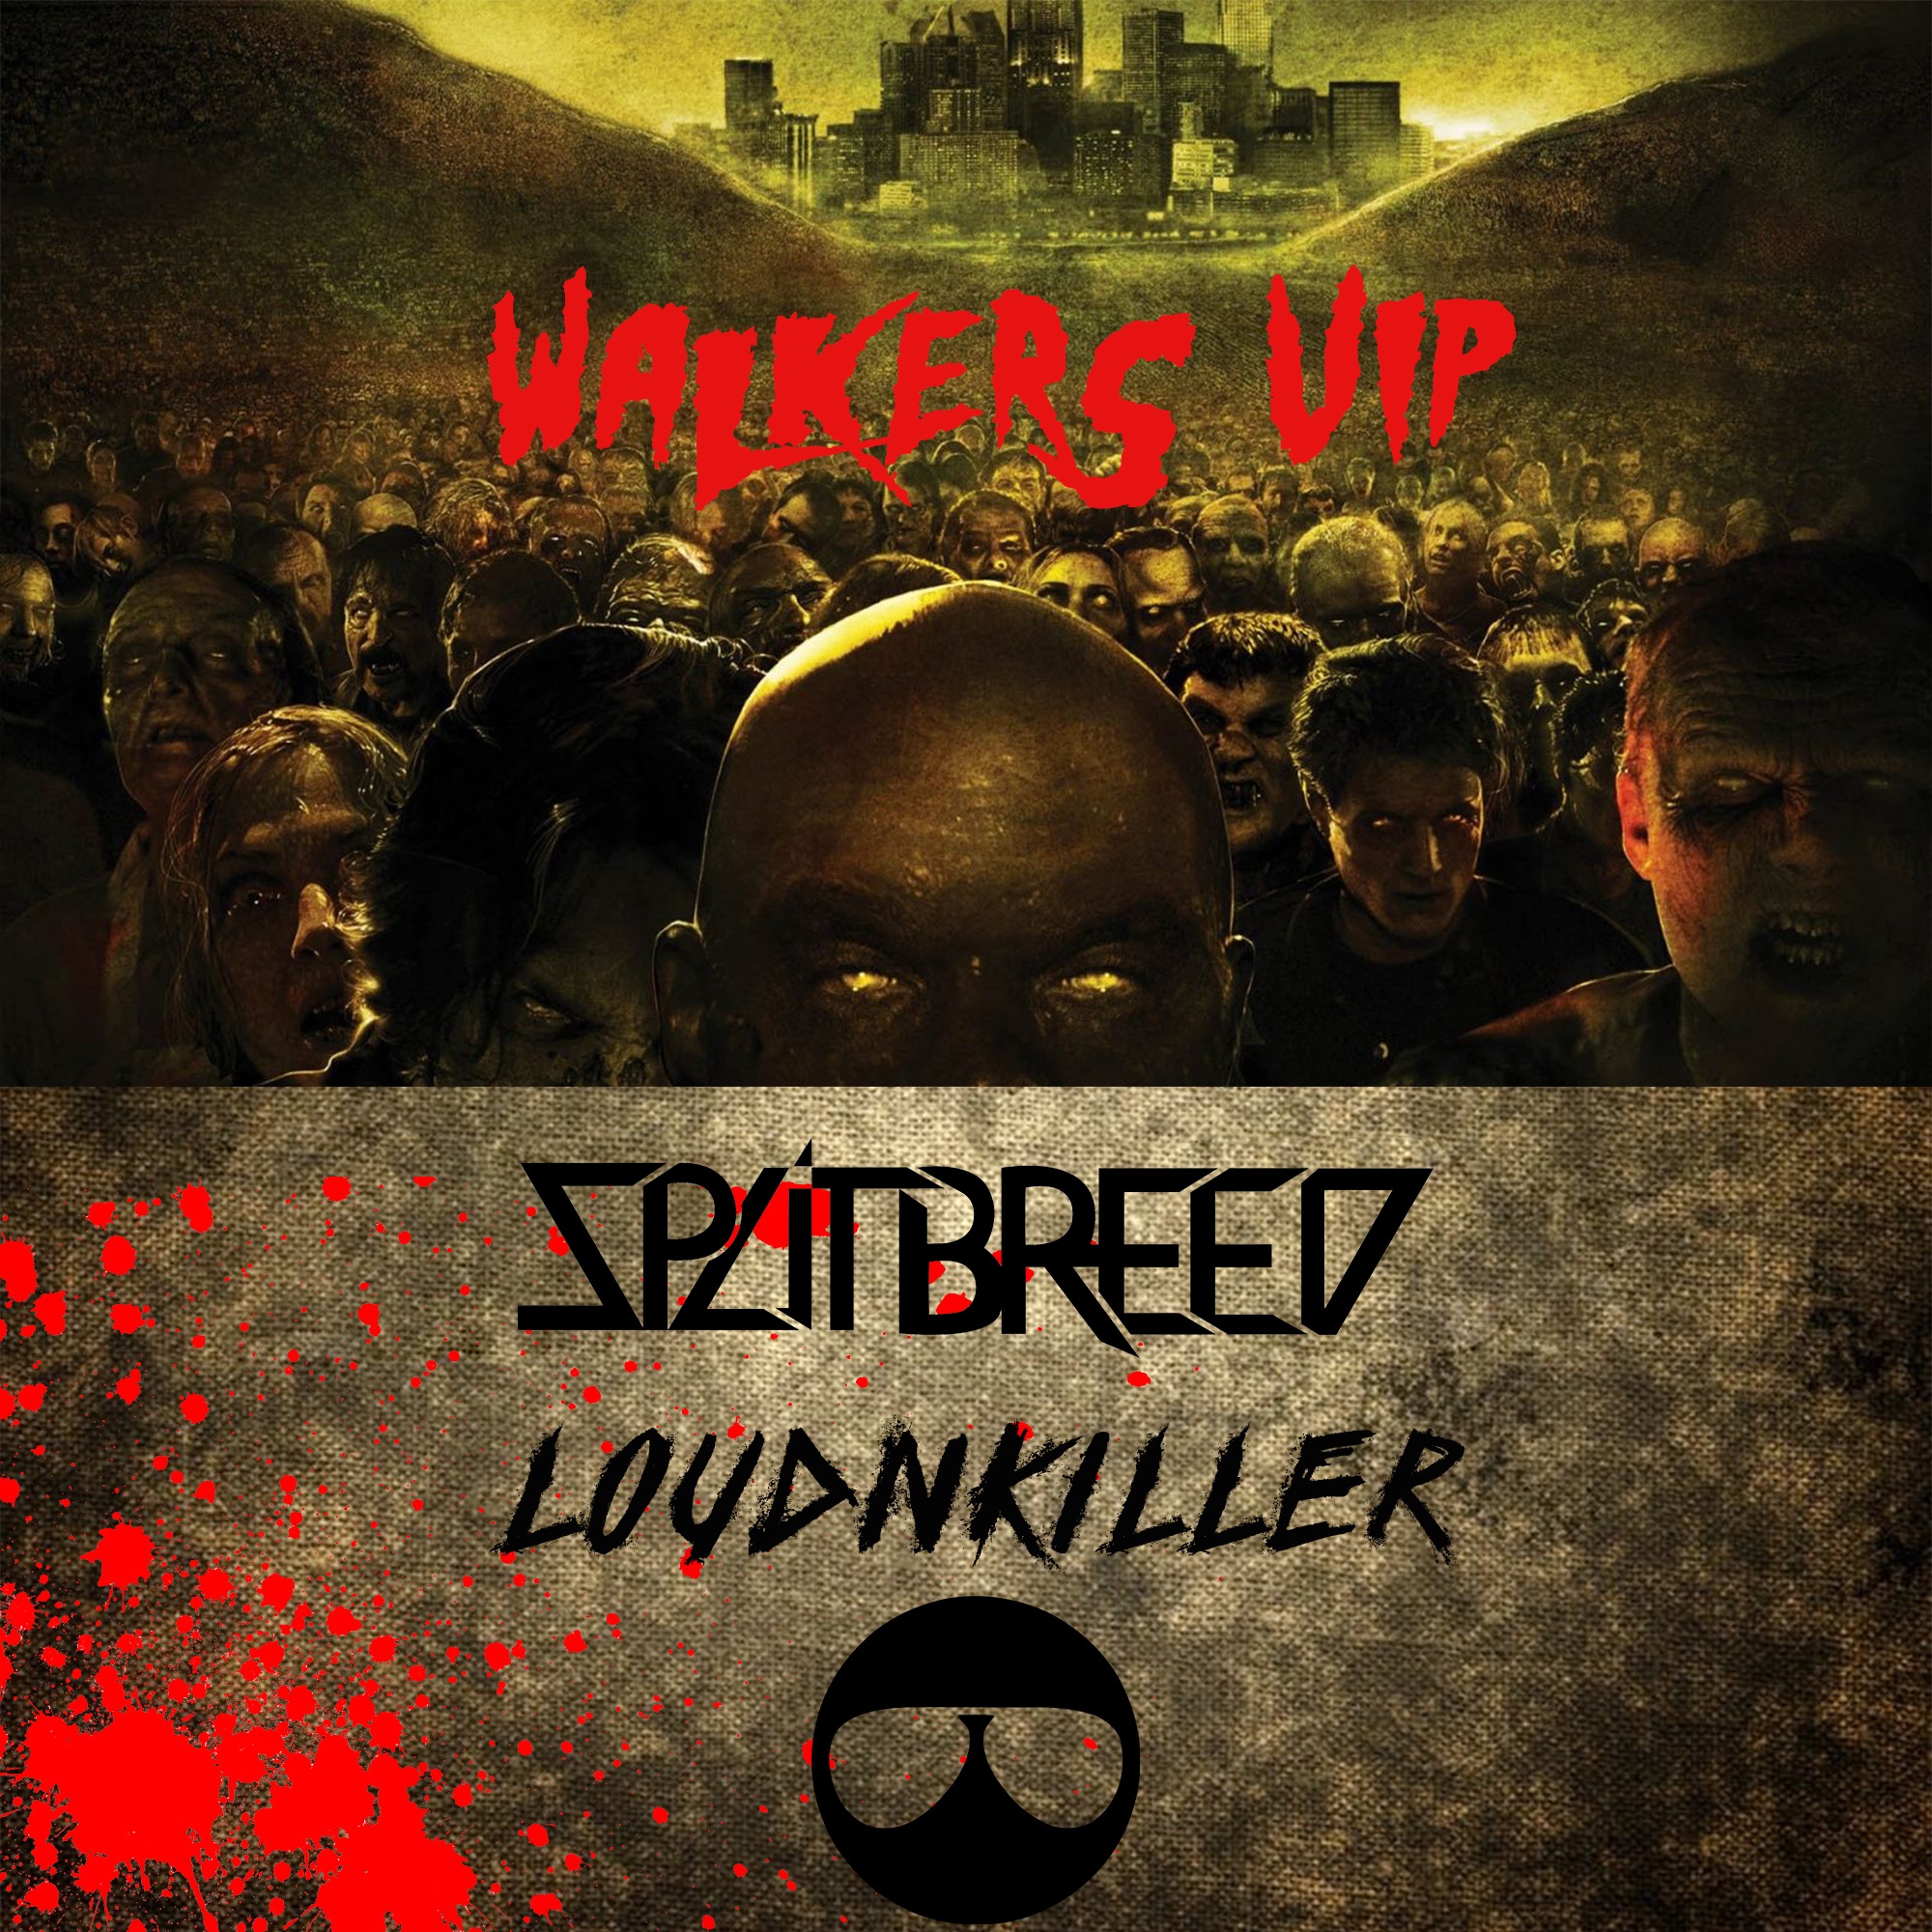 Scaricamento SPLITBREED & LOUD N' KILLER - WALKERS (VIP)